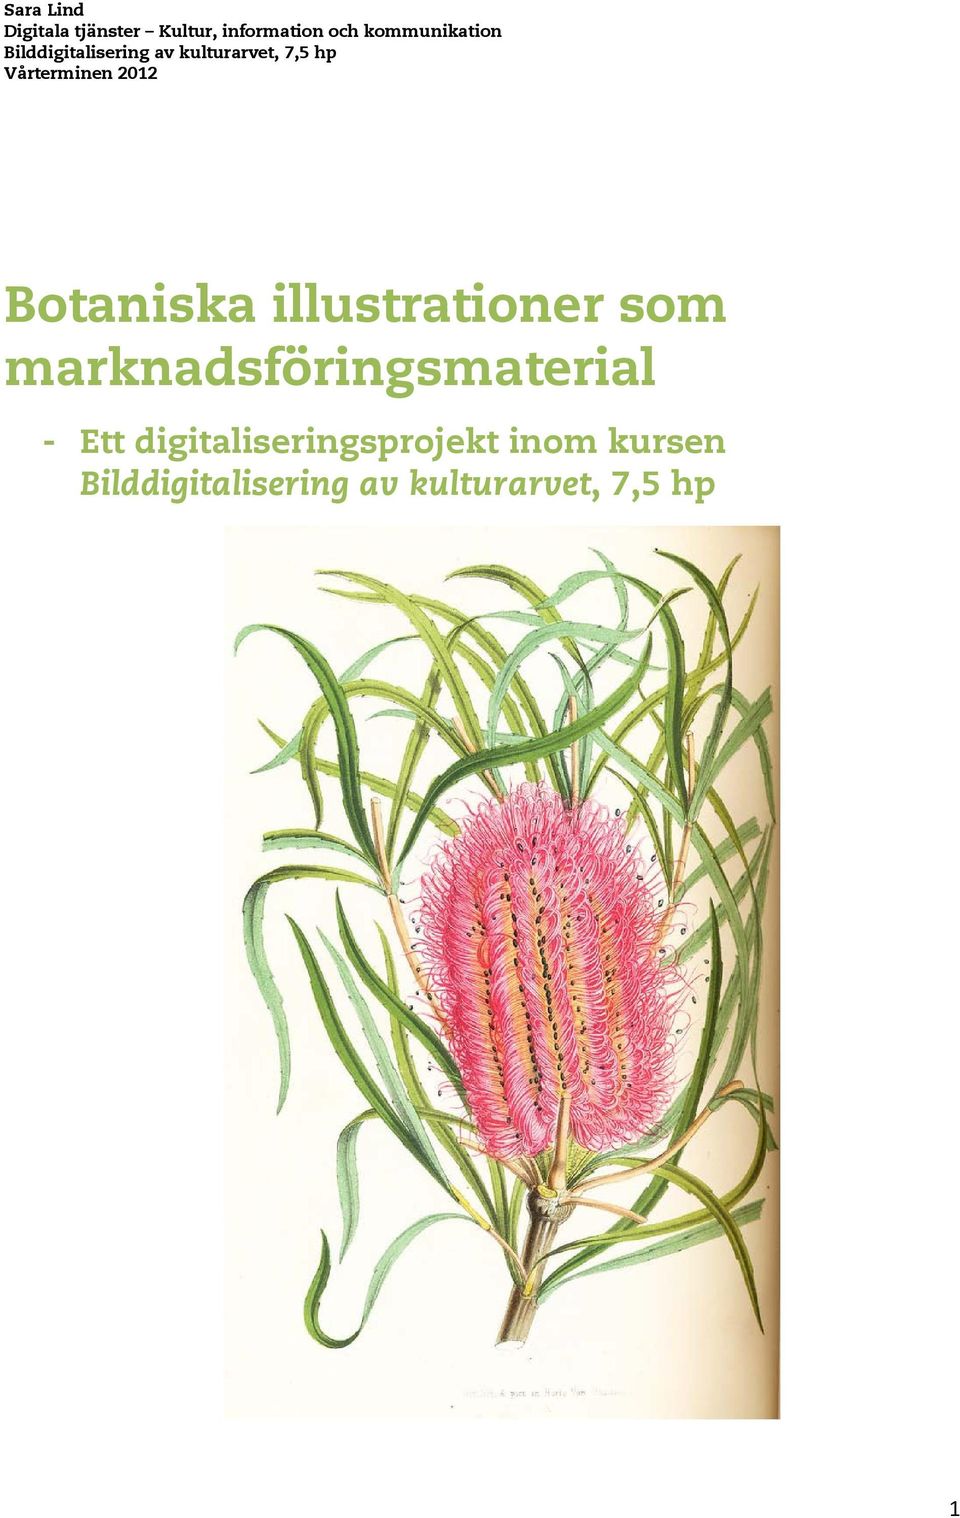 Botaniska illustrationer som marknadsföringsmaterial - Ett